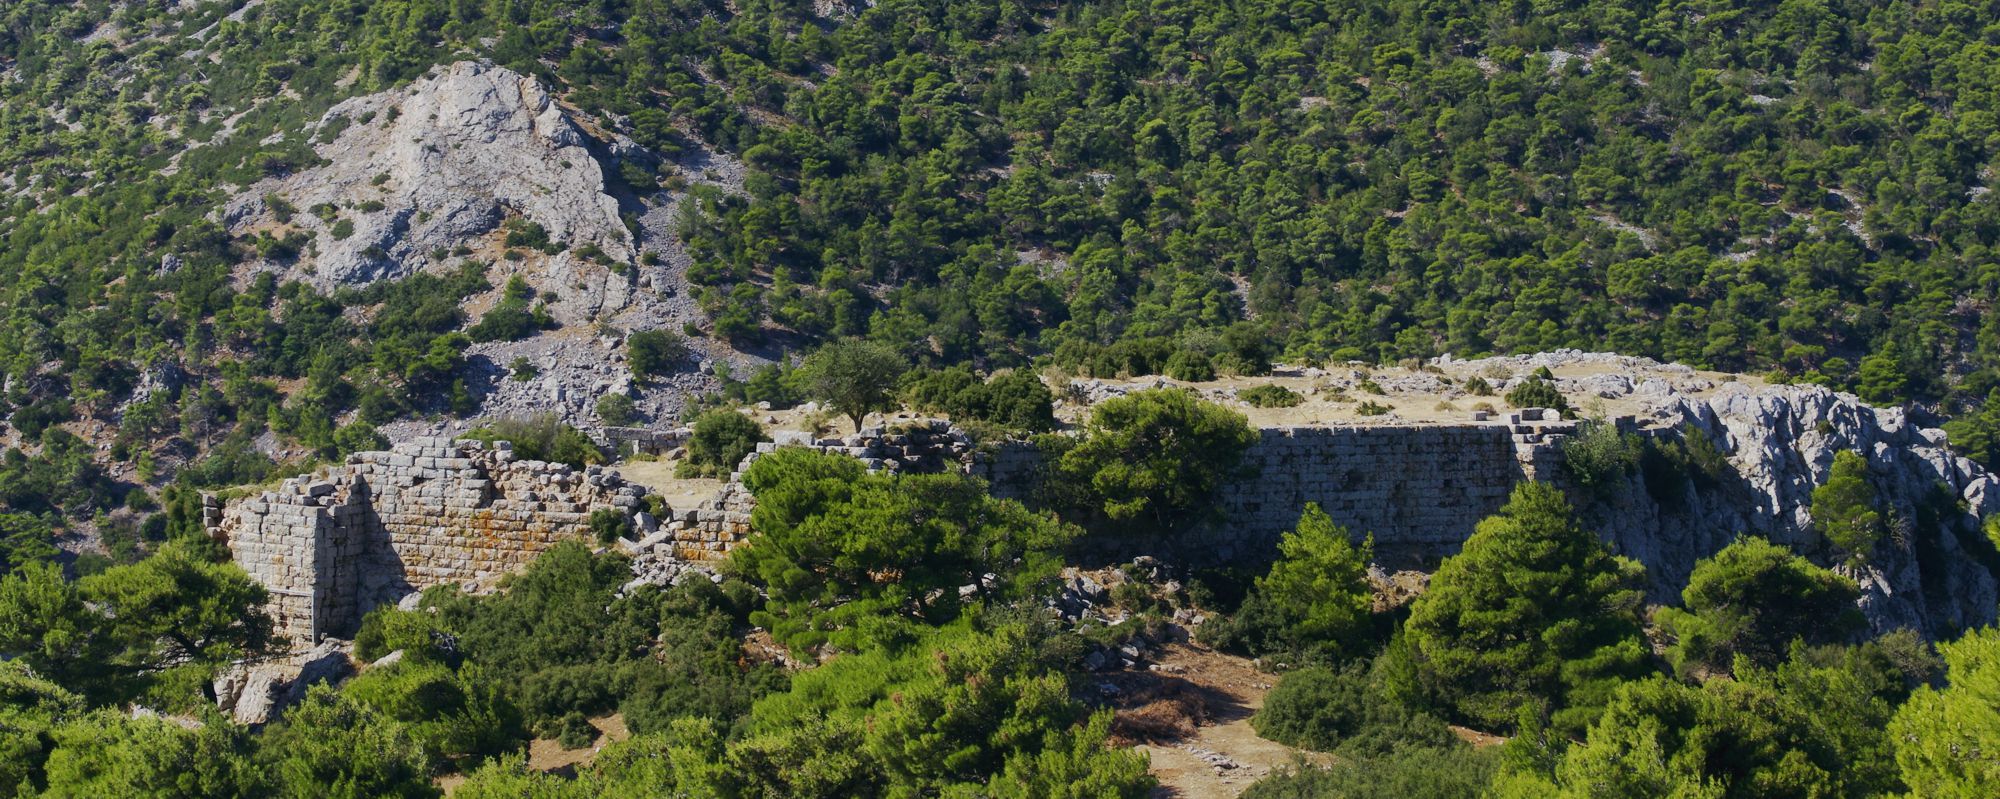 Οχυρώσεις στην Πάρνηθα: Το φρούριο της Φυλής (ανατολική όψη)